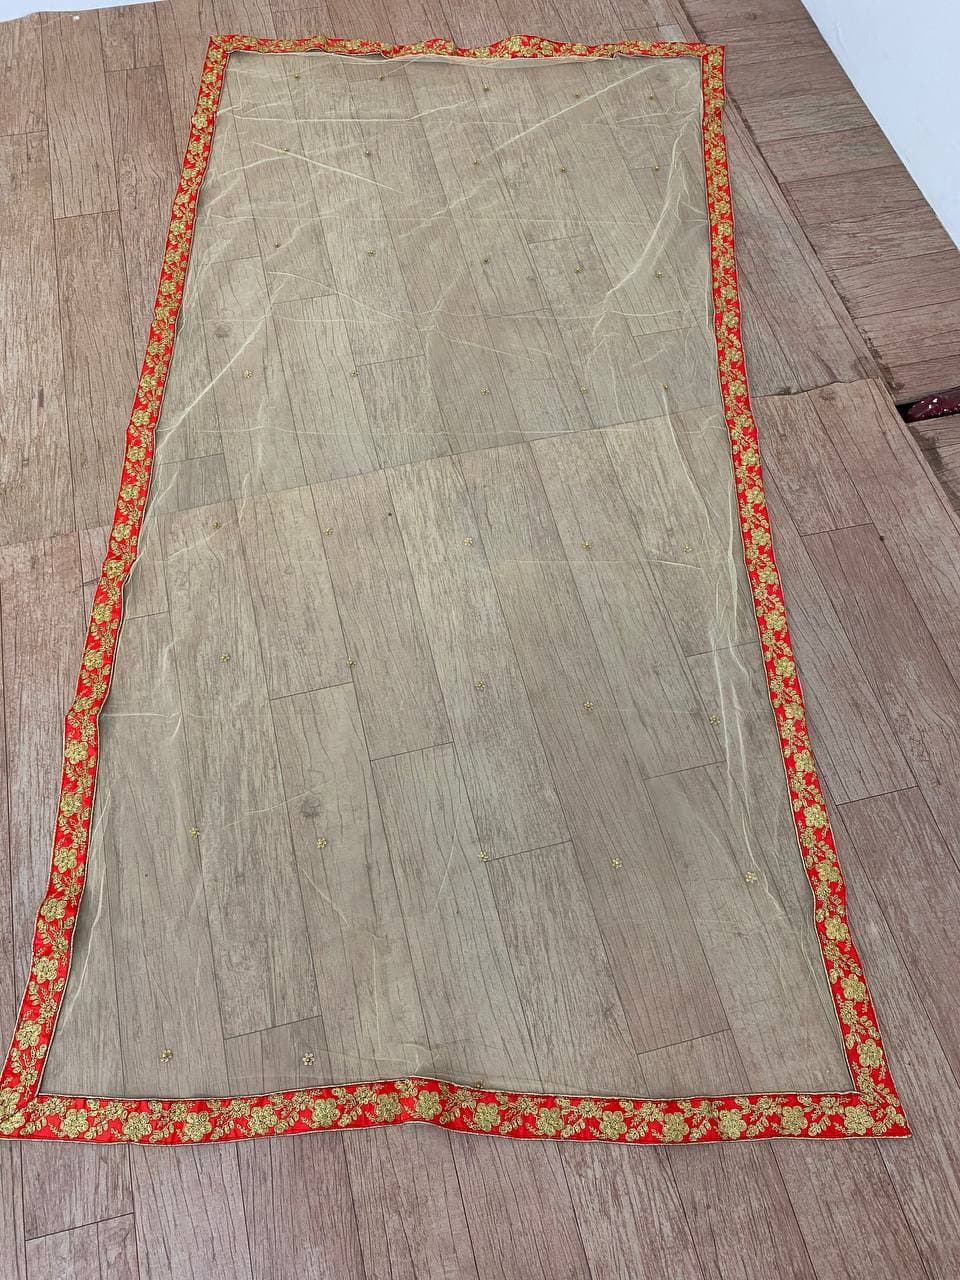 Red Lehenga Choli In Malai Satin Silk With Cording Dori Work